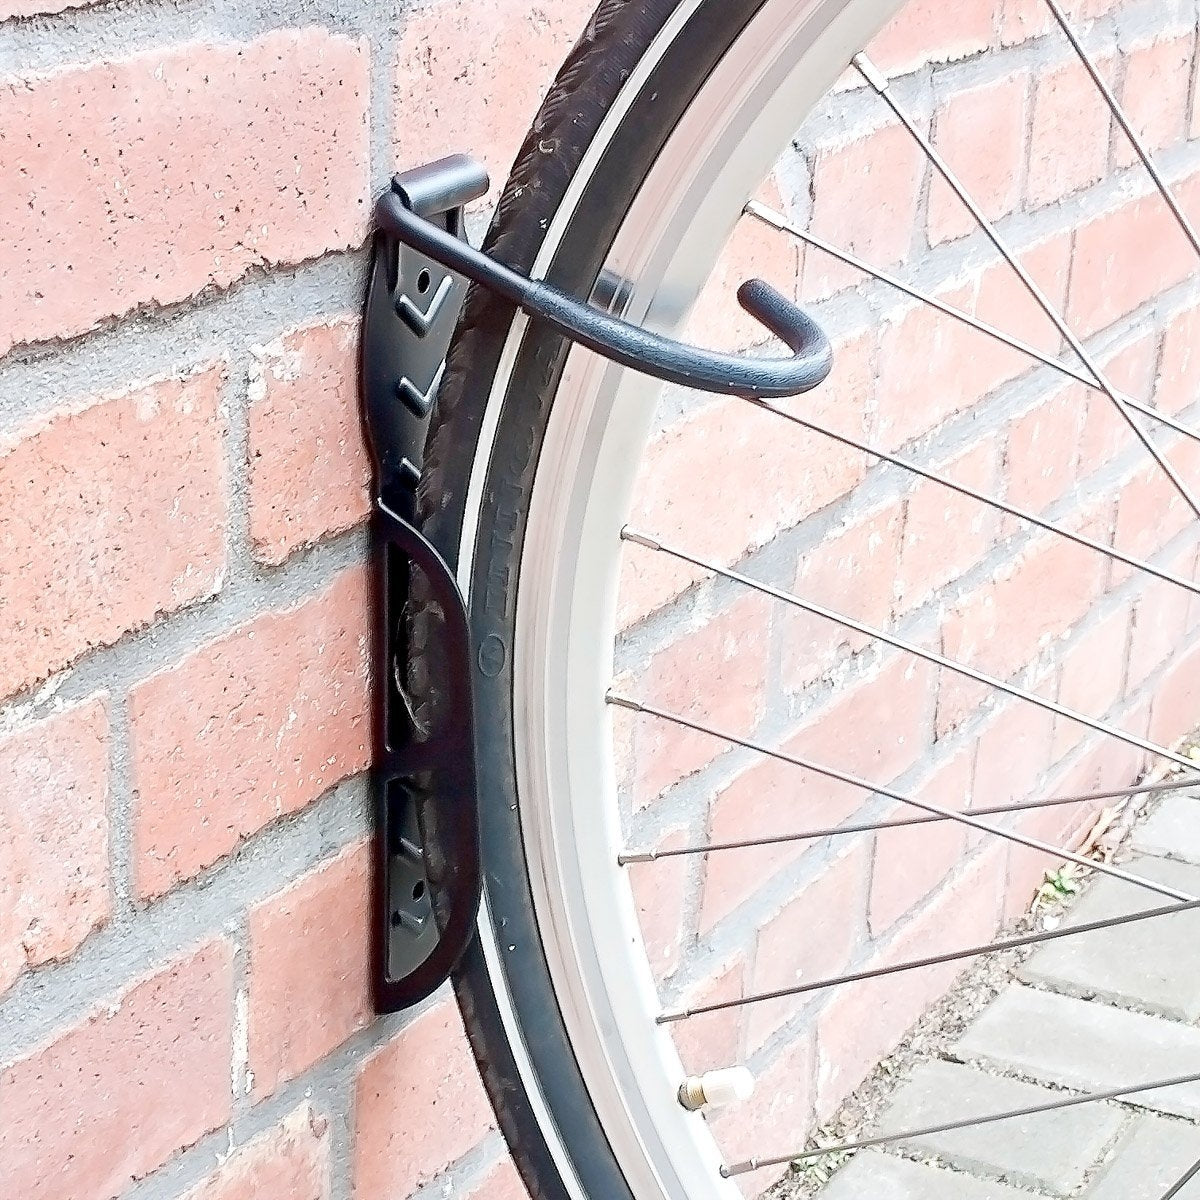 Râtelier vélo mural pivotant à 180° - Mottez B049Q